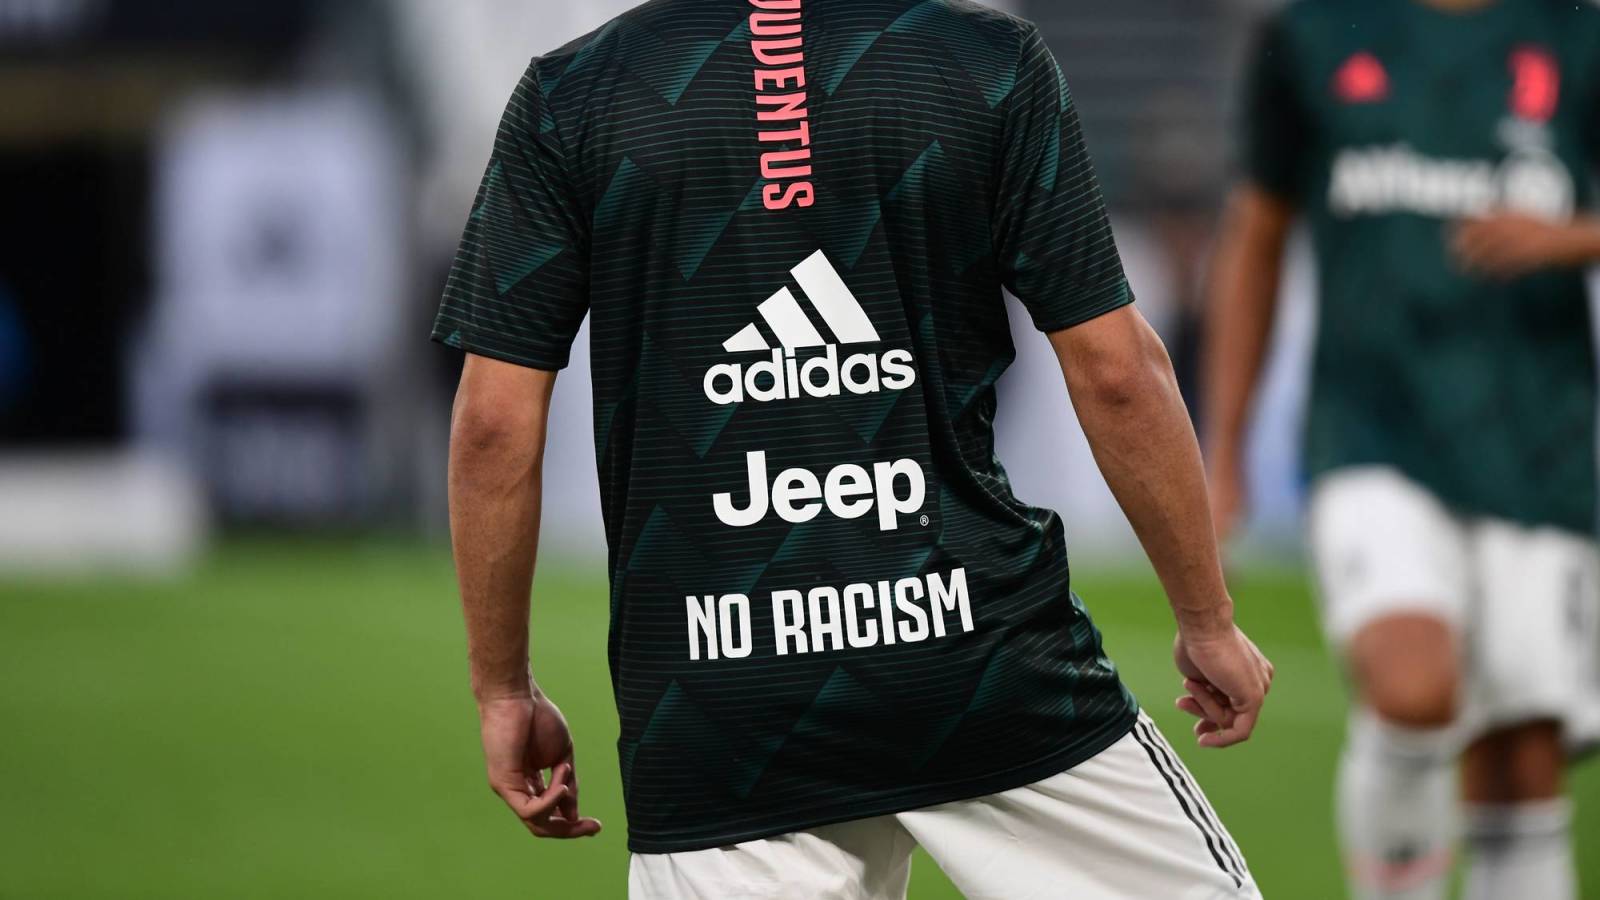 Juventus, AC Milan wear racism,' 'Black Matter' shirts before Coppa Italia semifinal | Yardbarker